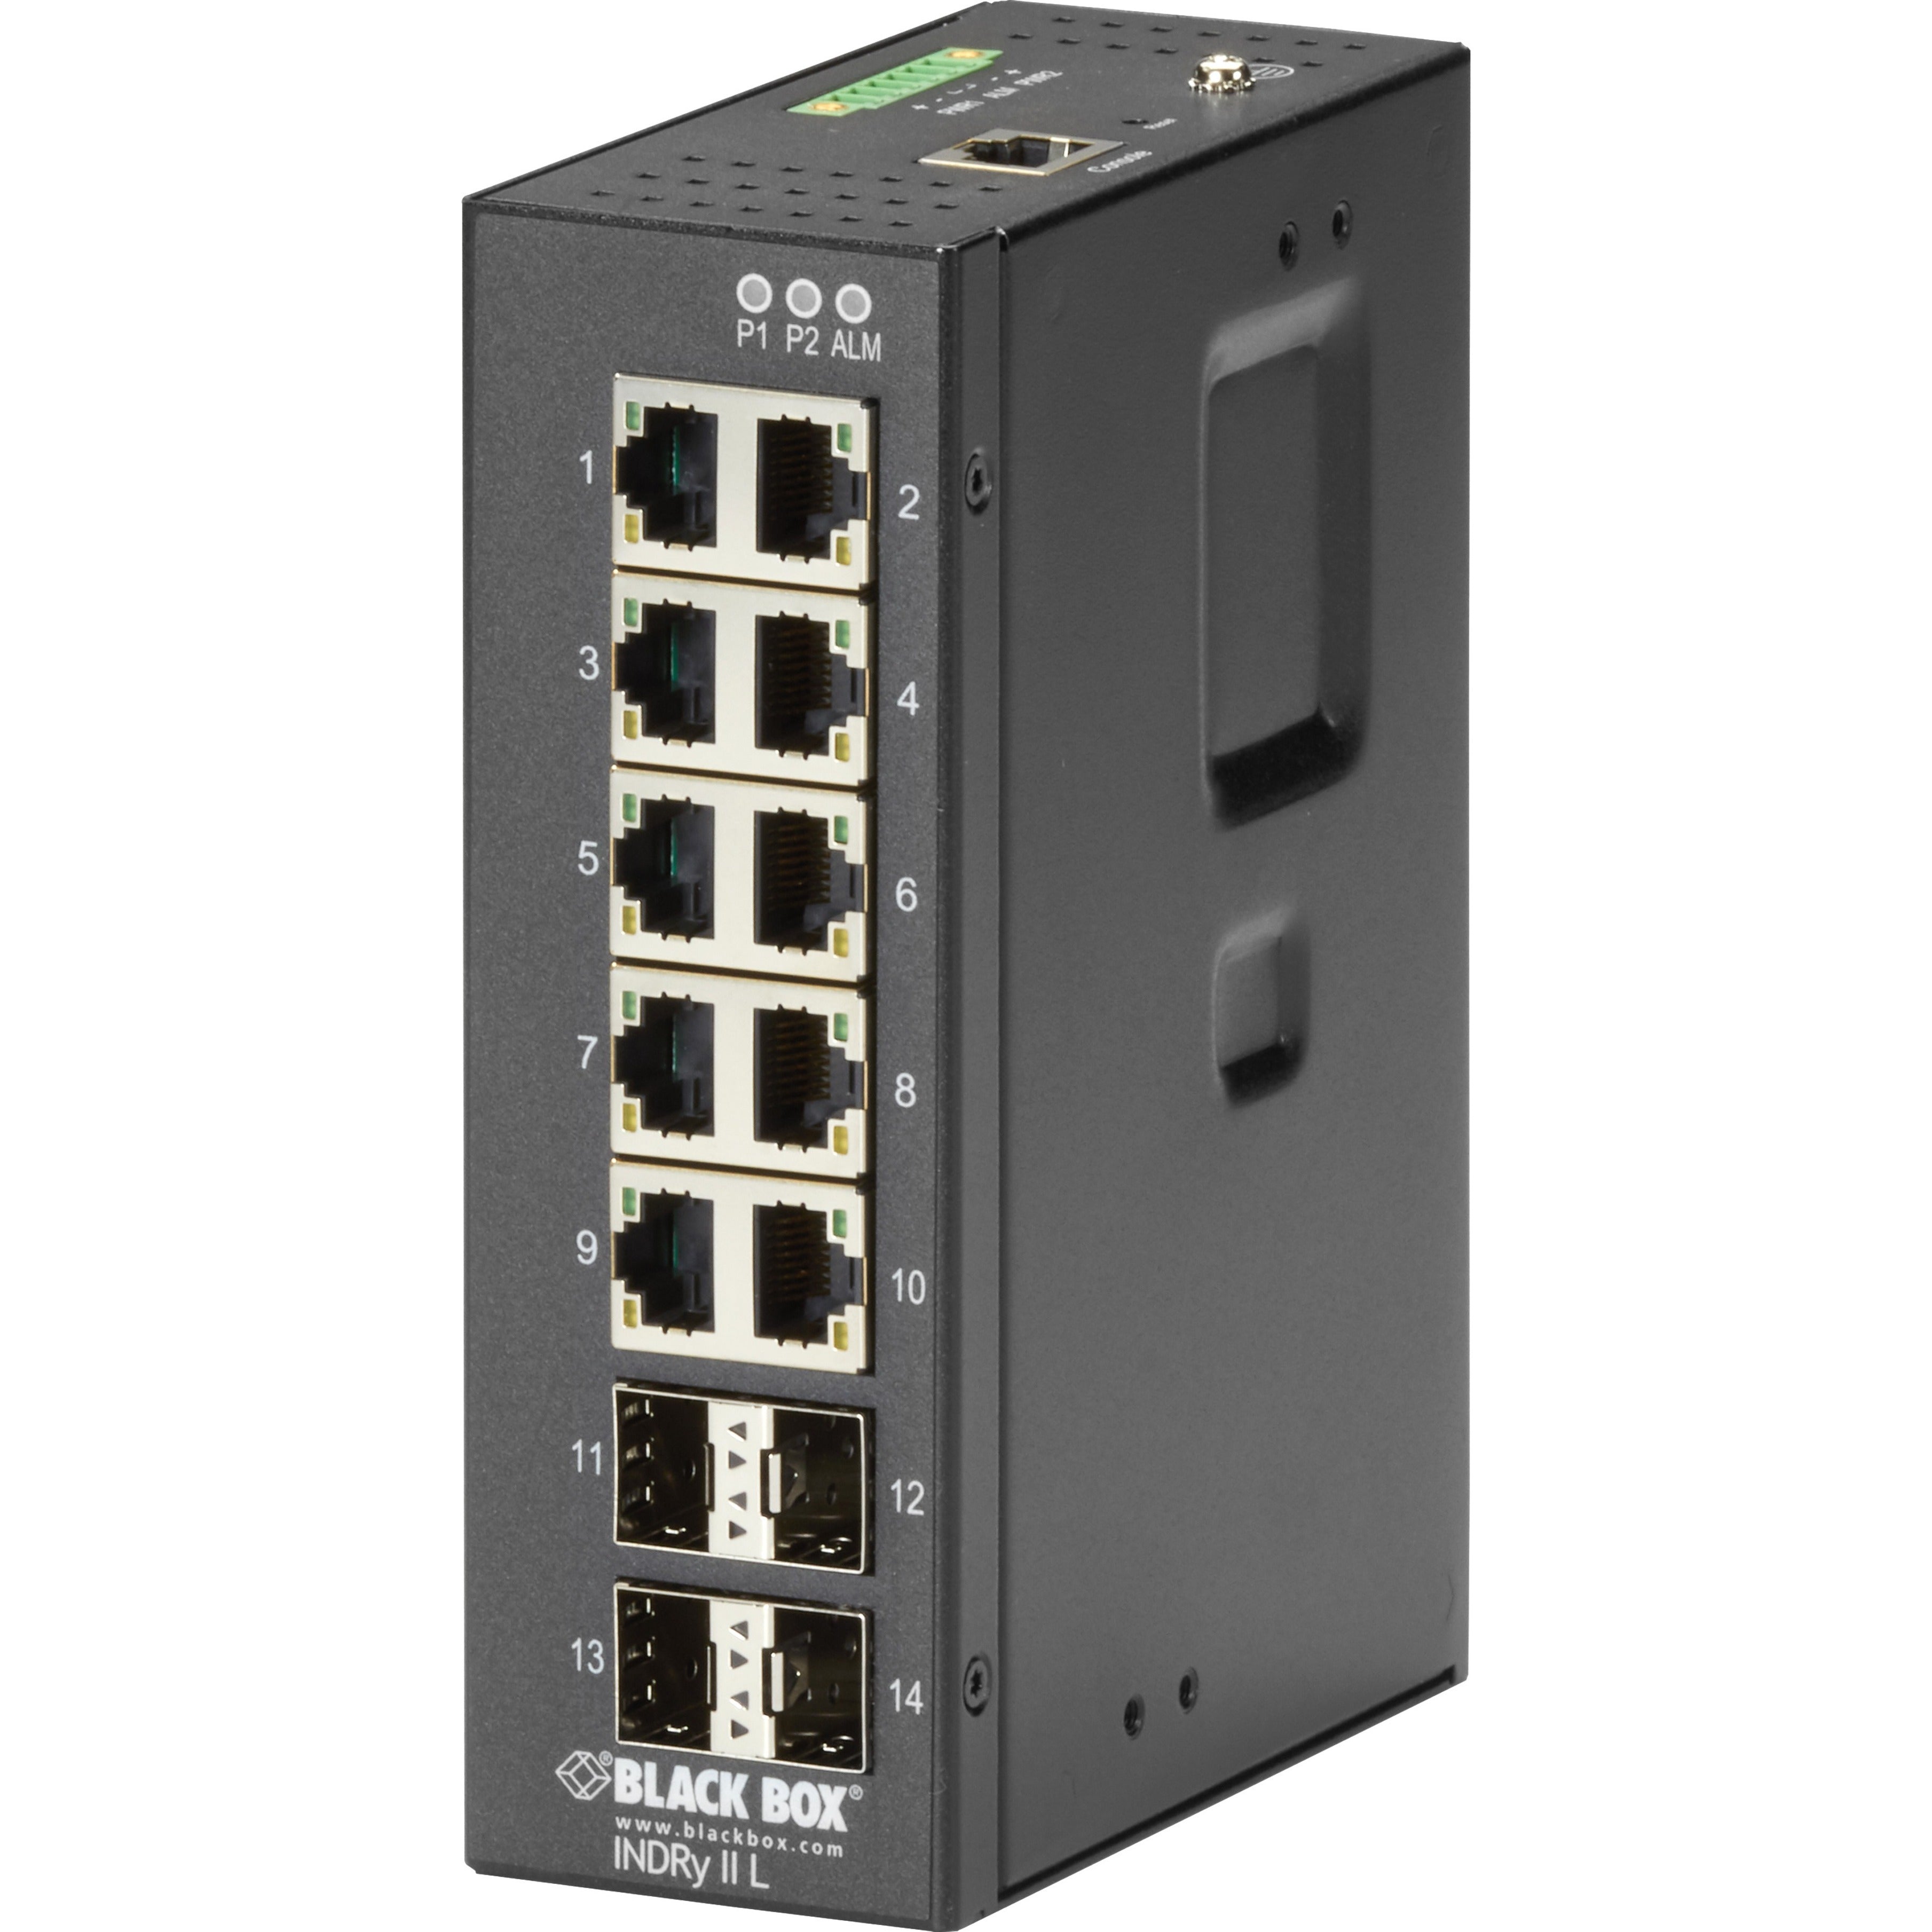 Black Box LIG1014A Ethernet Switch, 10-Port Gigabit Ethernet Network, SFP Expansion Slots